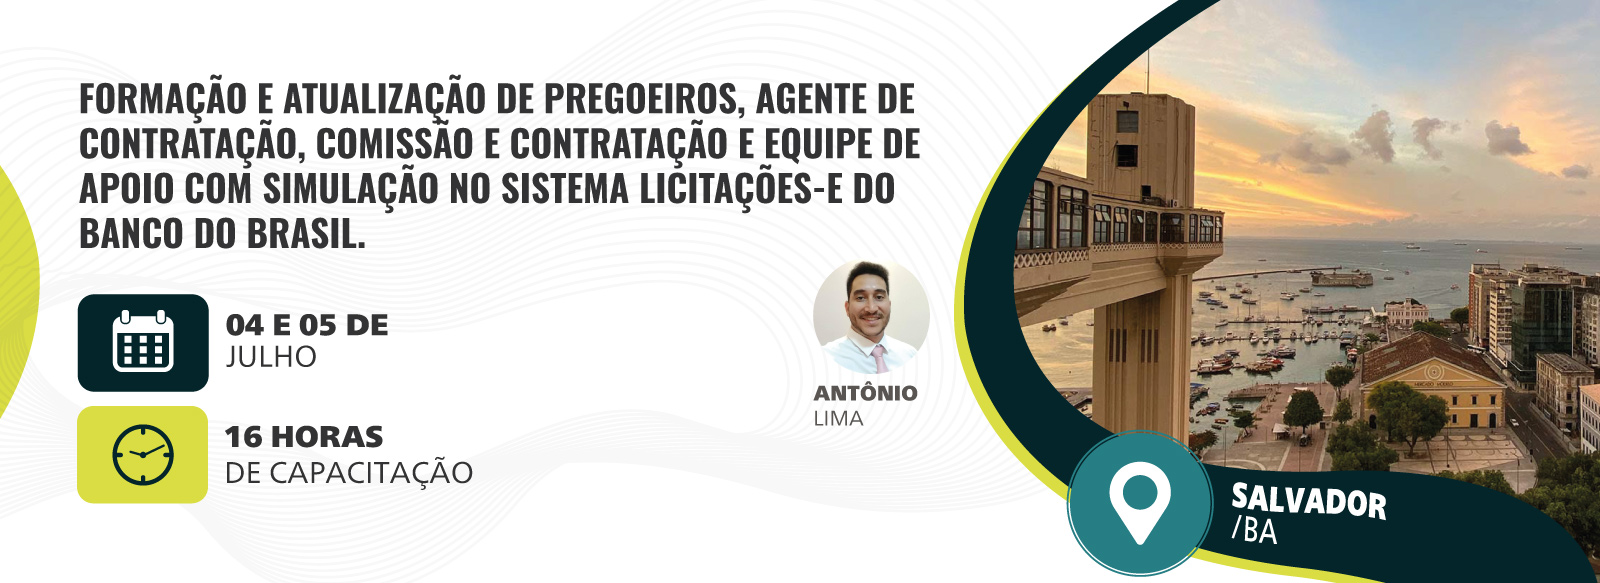 Formação e Atualização de Pregoeiros, Agente de Contratação, Comissão e Contratação e Equipe de Apoio com Simulação no Sistema Licitações-E do Banco Do Brasil.